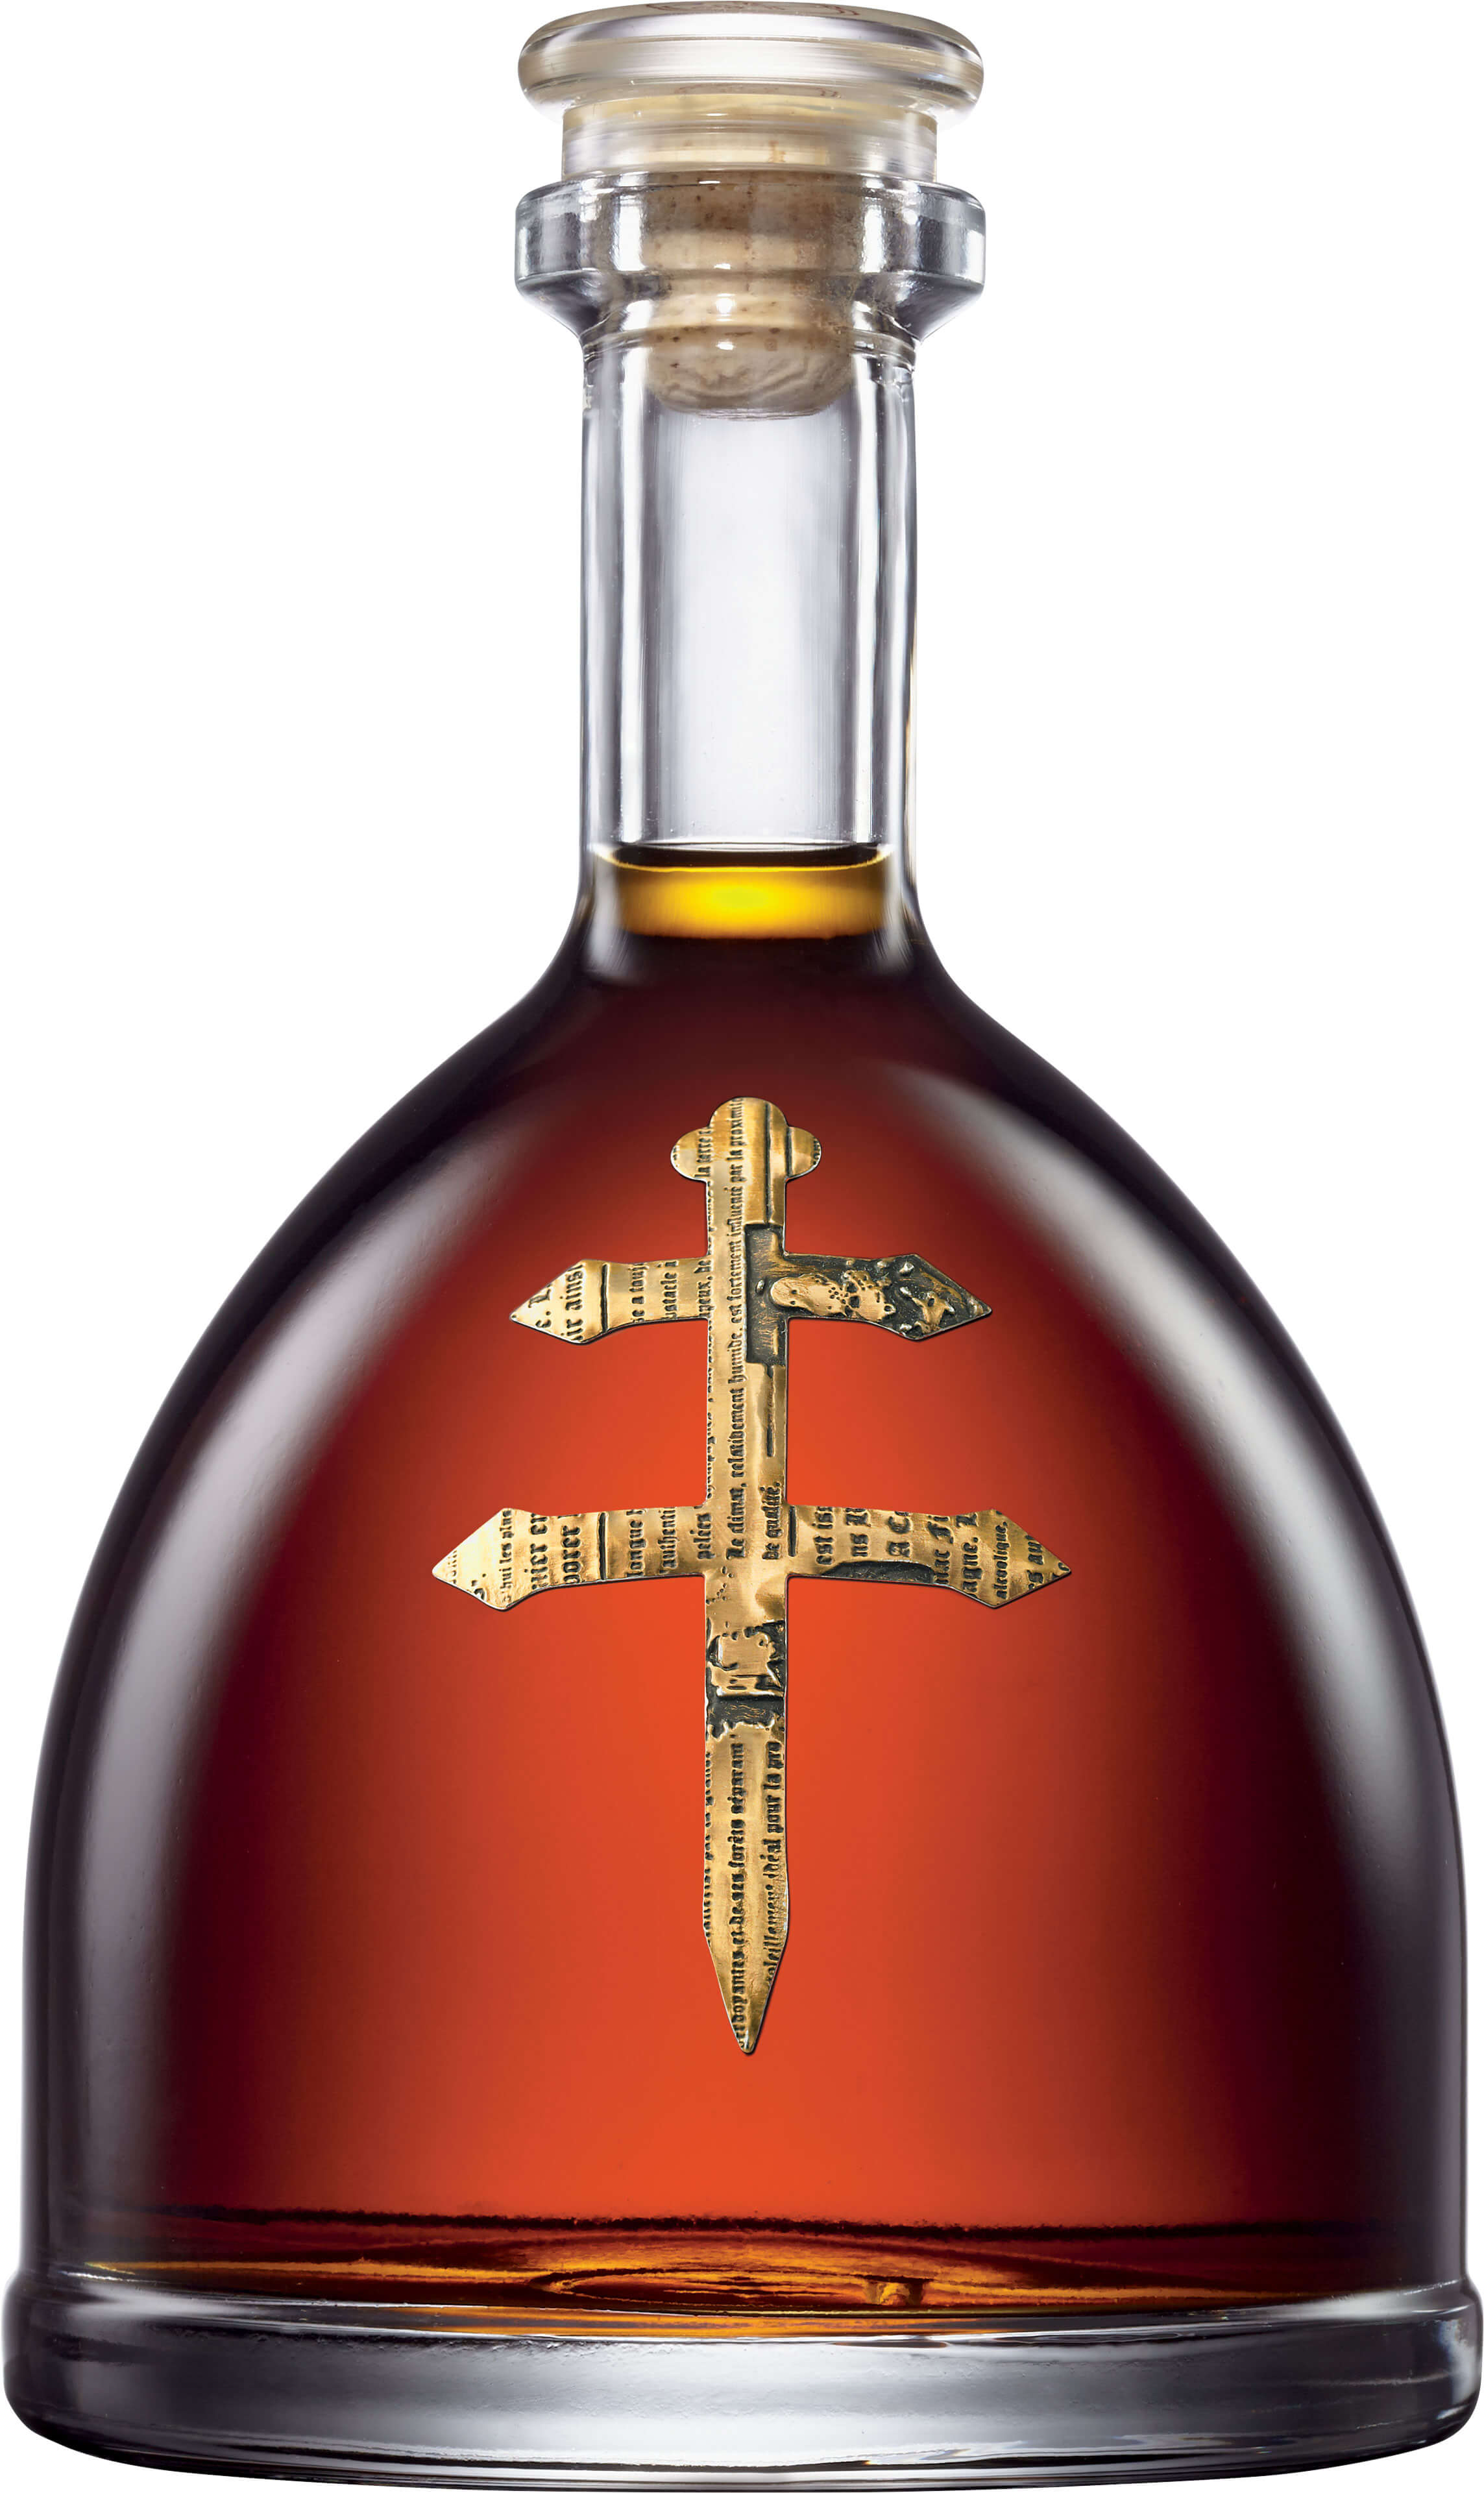 Bottle of DUSSE Cognac